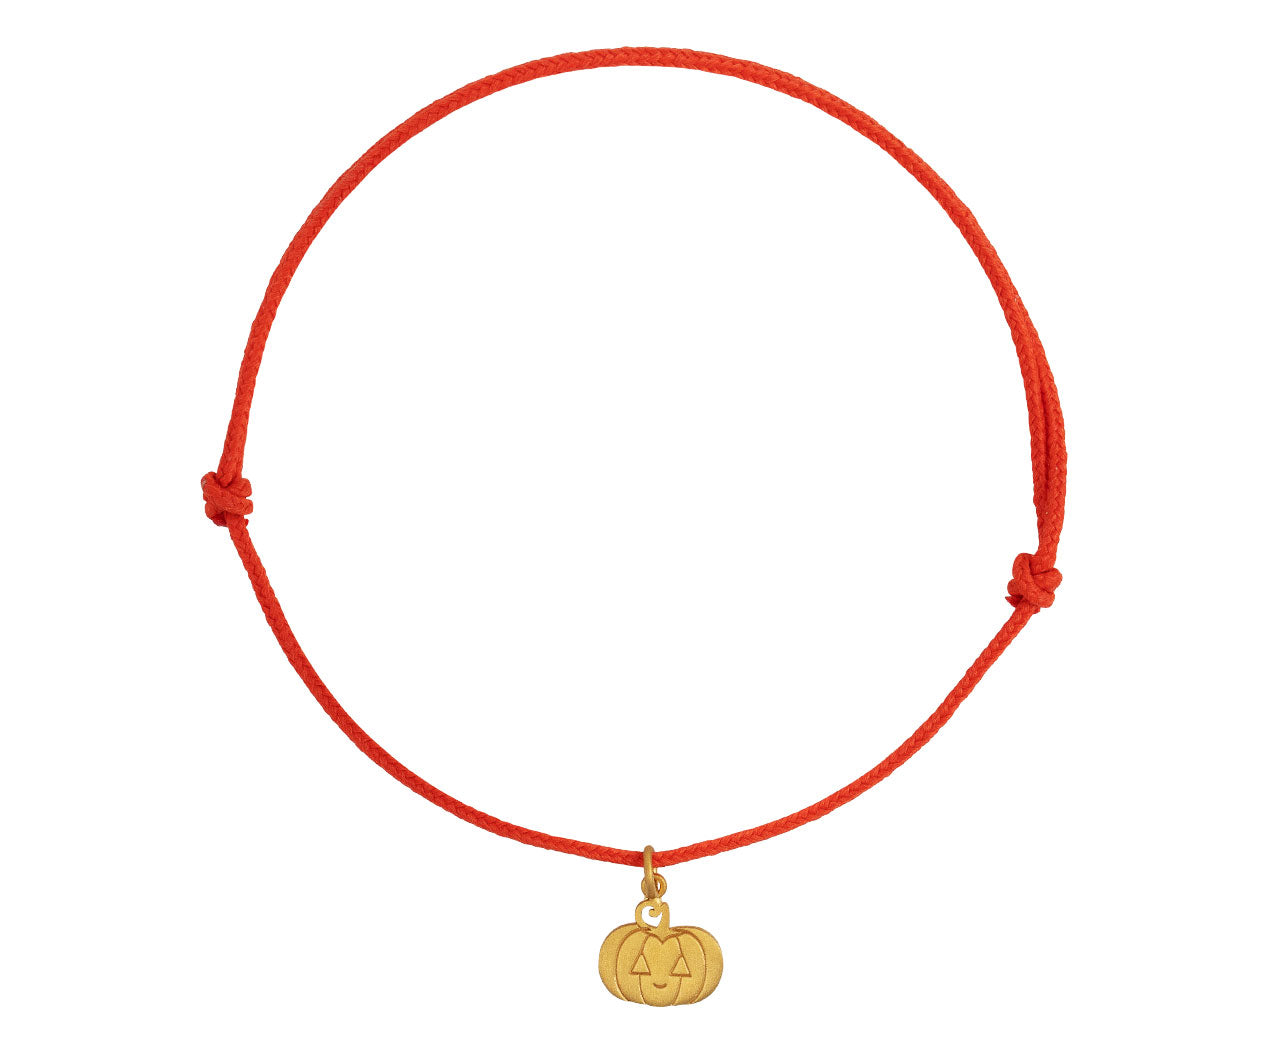 22k Bracelet Gold|22k Gold Plated Natural Stone Charm Bracelet For Women -  Handmade Link Chain